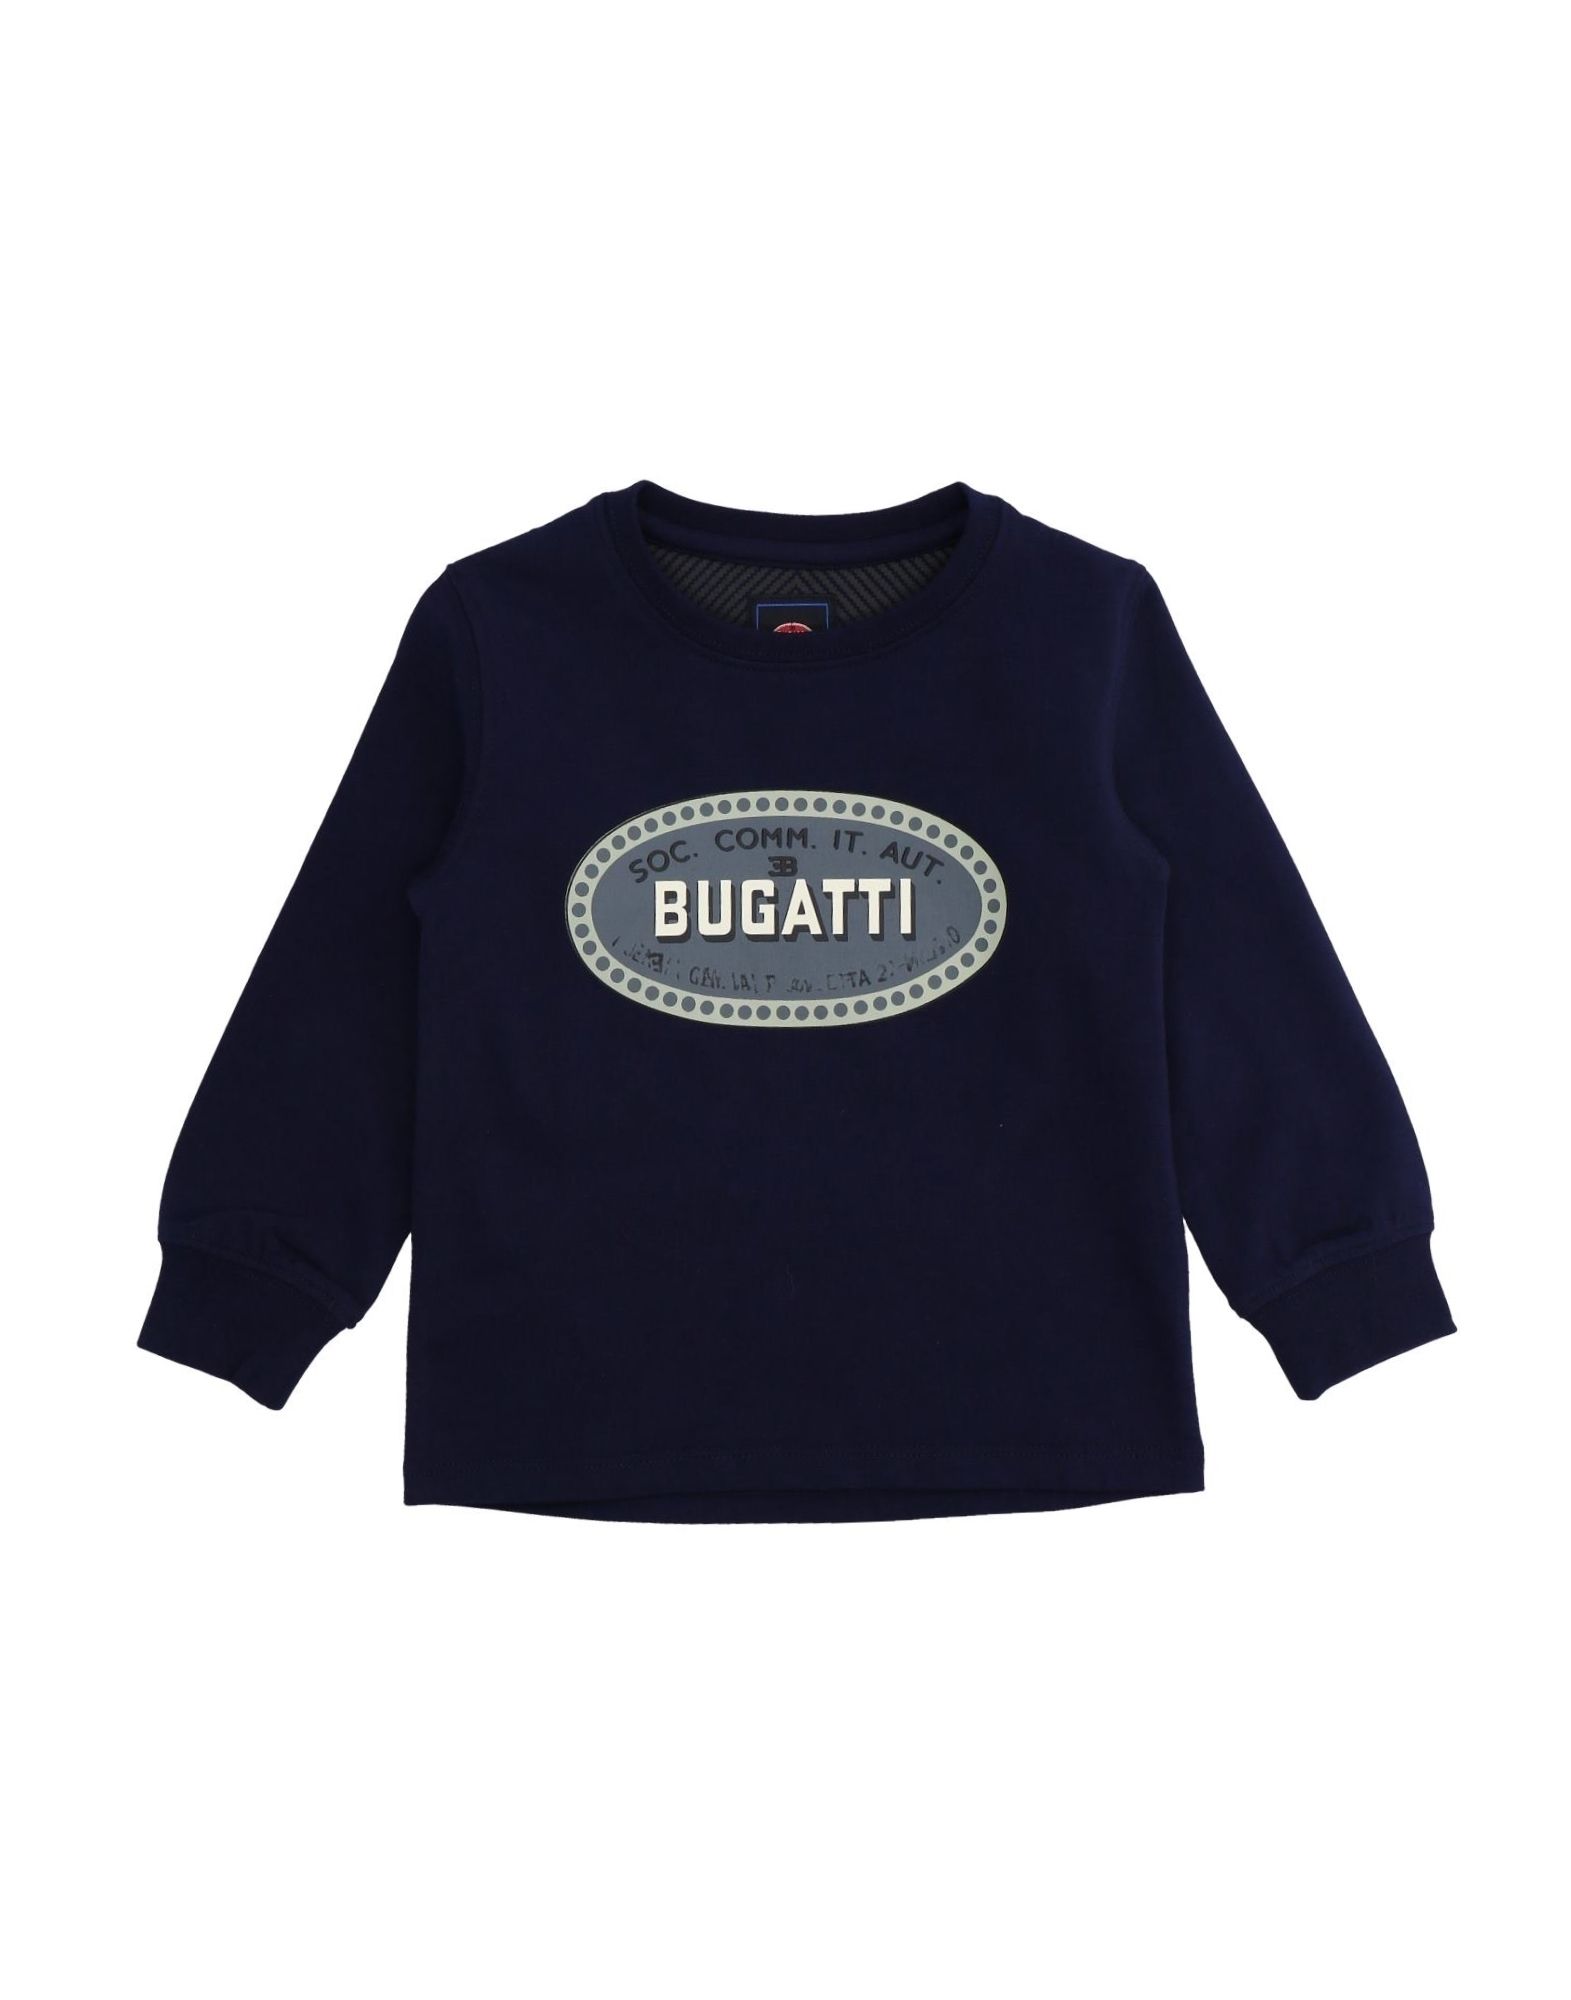 Бугатти бренд одежды. Bugatti jersey